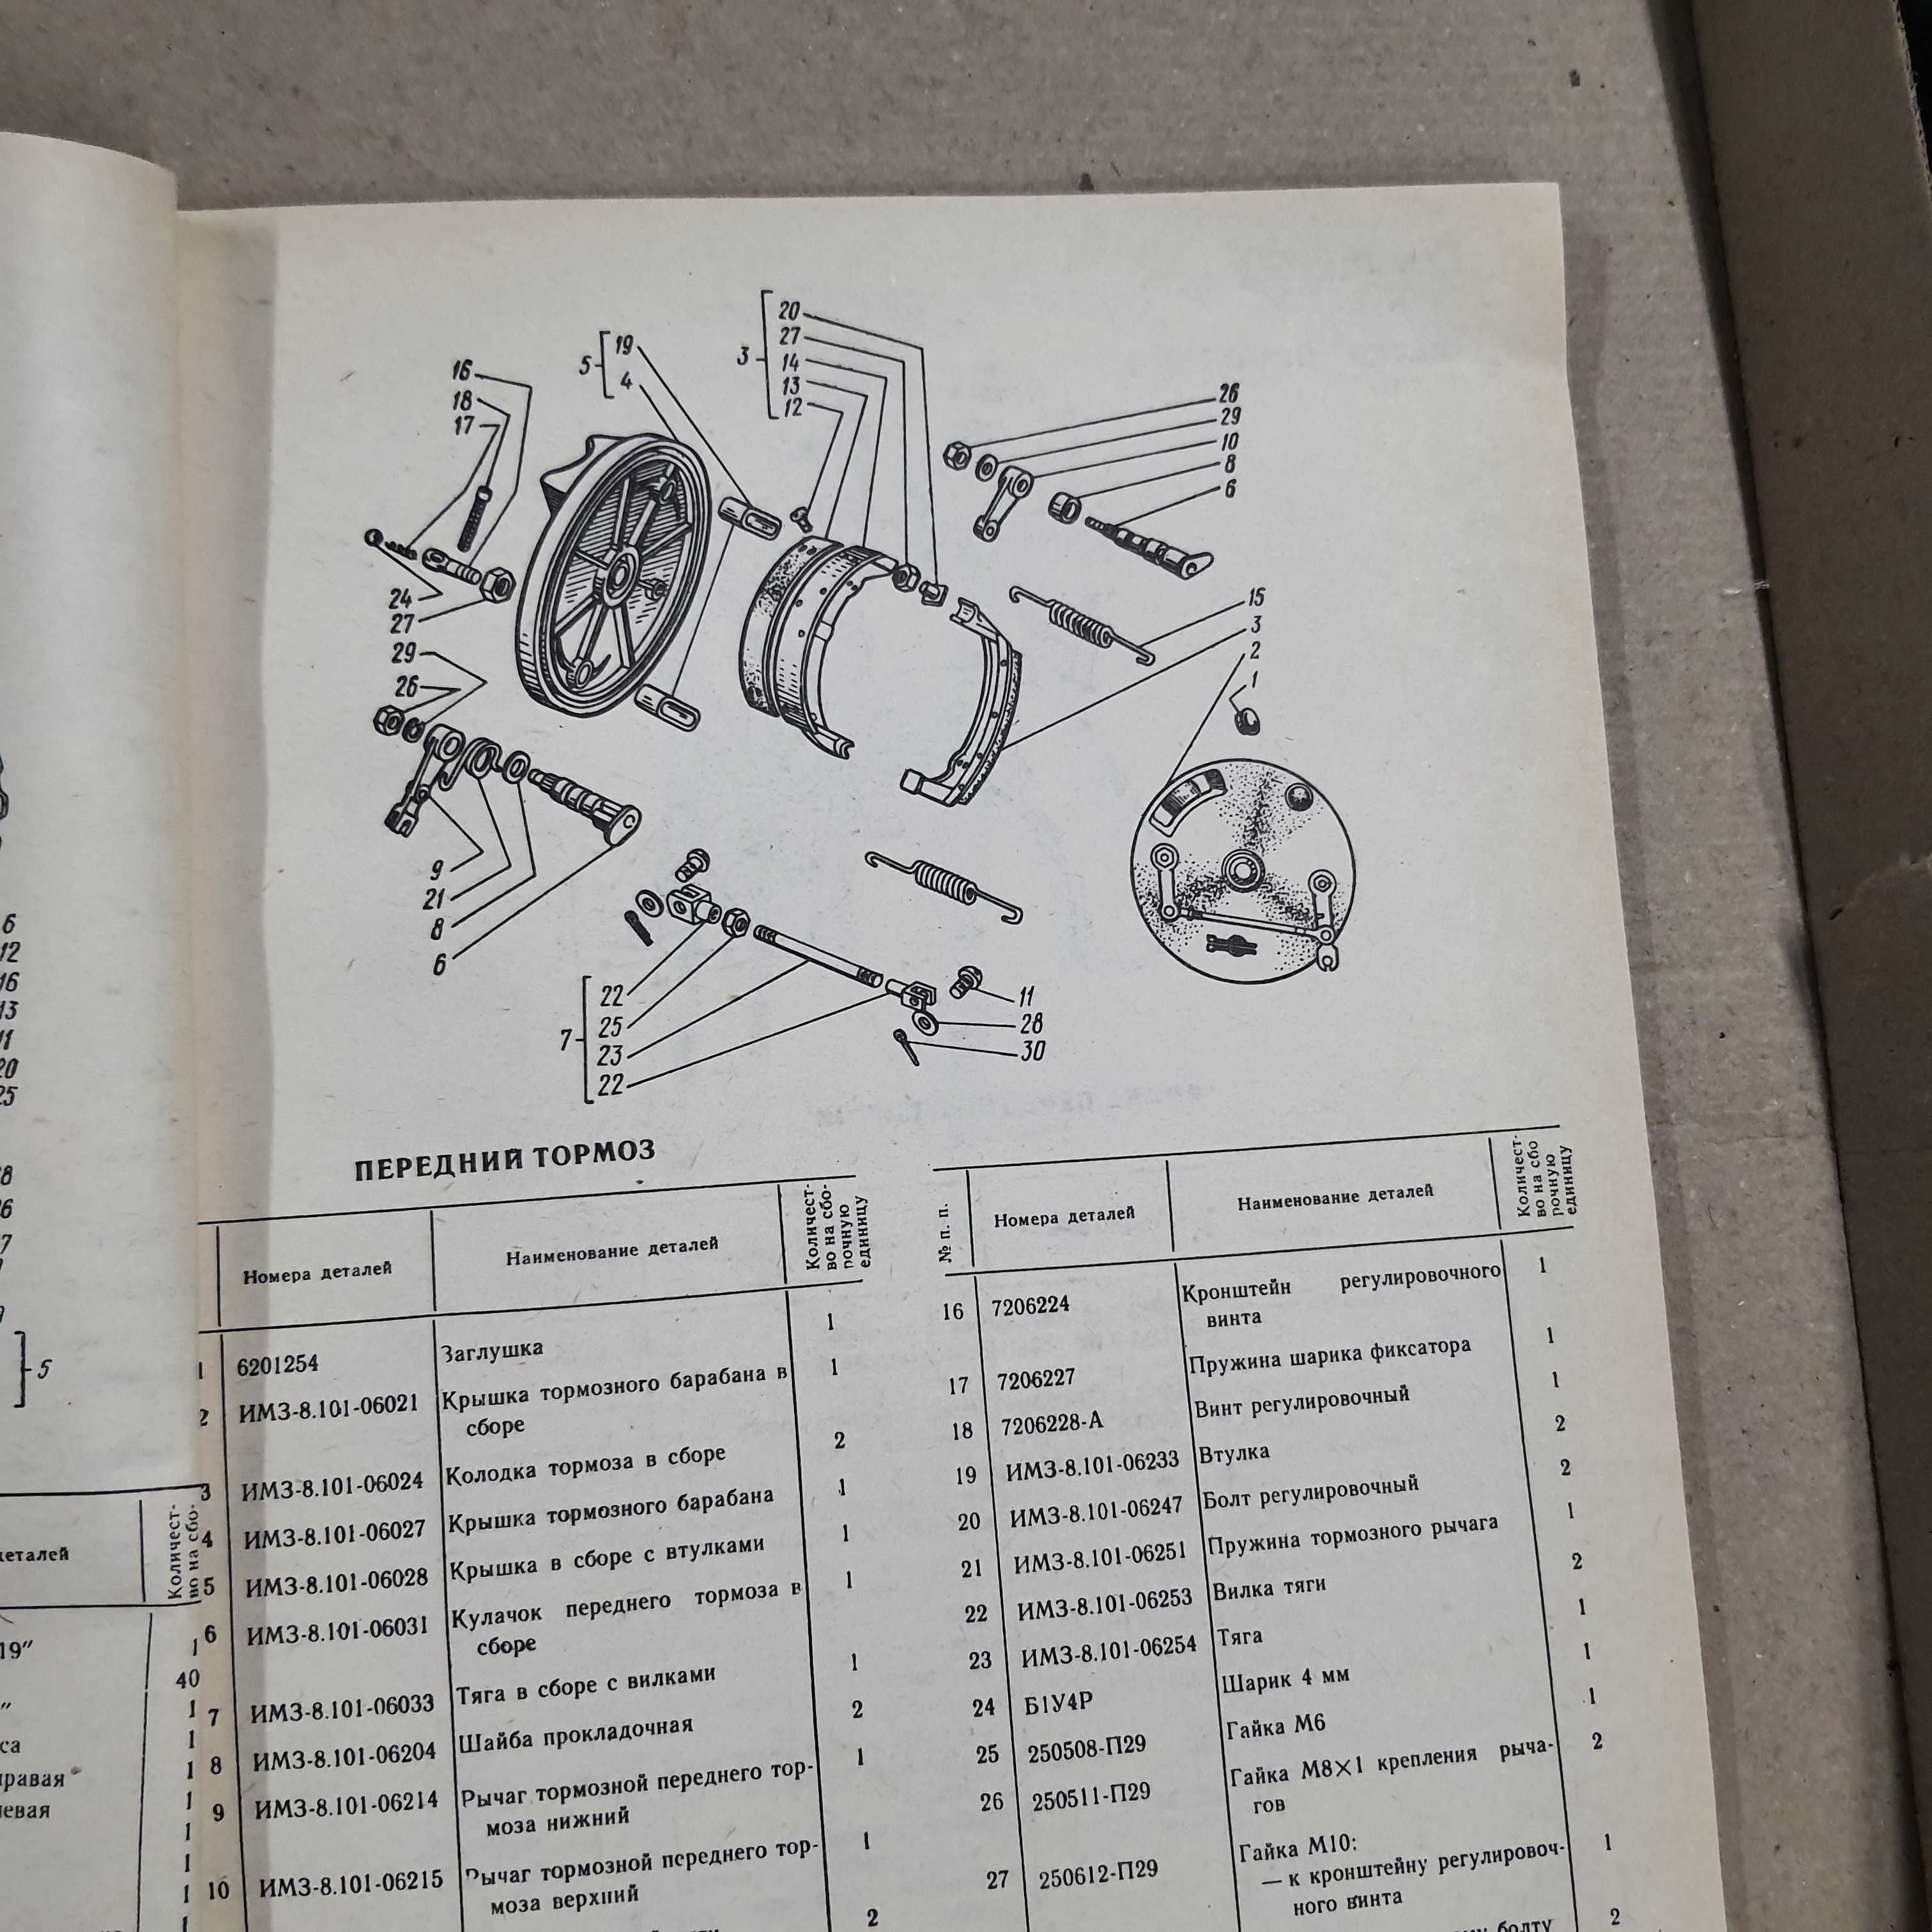 Каталог запасных частей мотоцикла УРАЛ М-67-36 СССР оригинал 1986 года